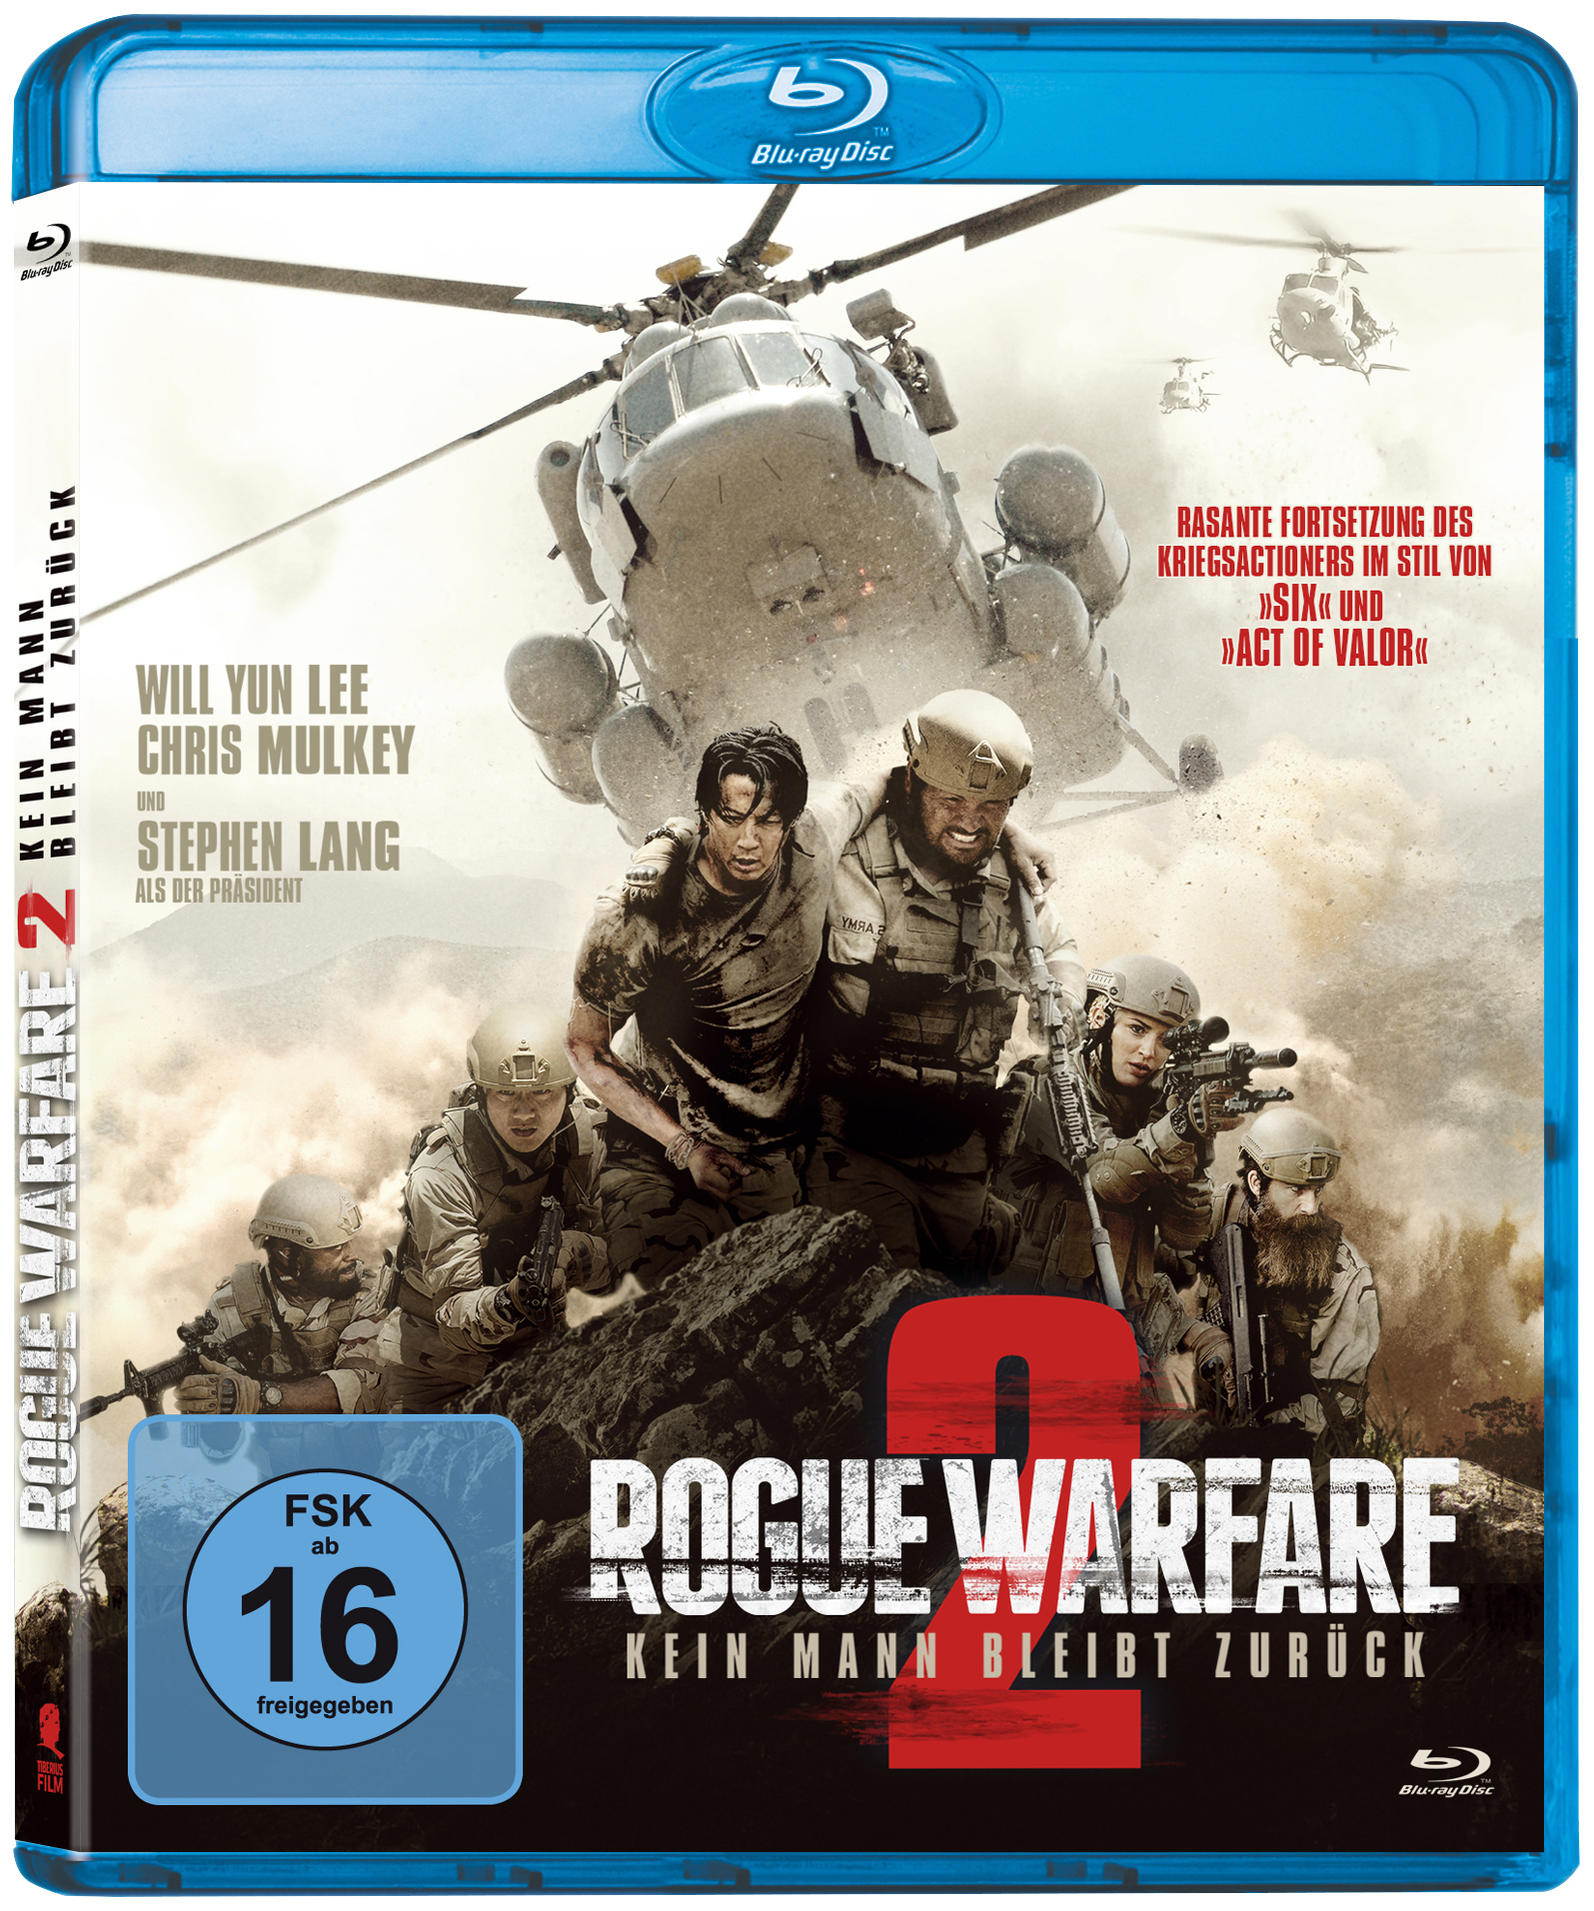 Rogue Warfare 2 - Mann zurück bleibt Kein Blu-ray